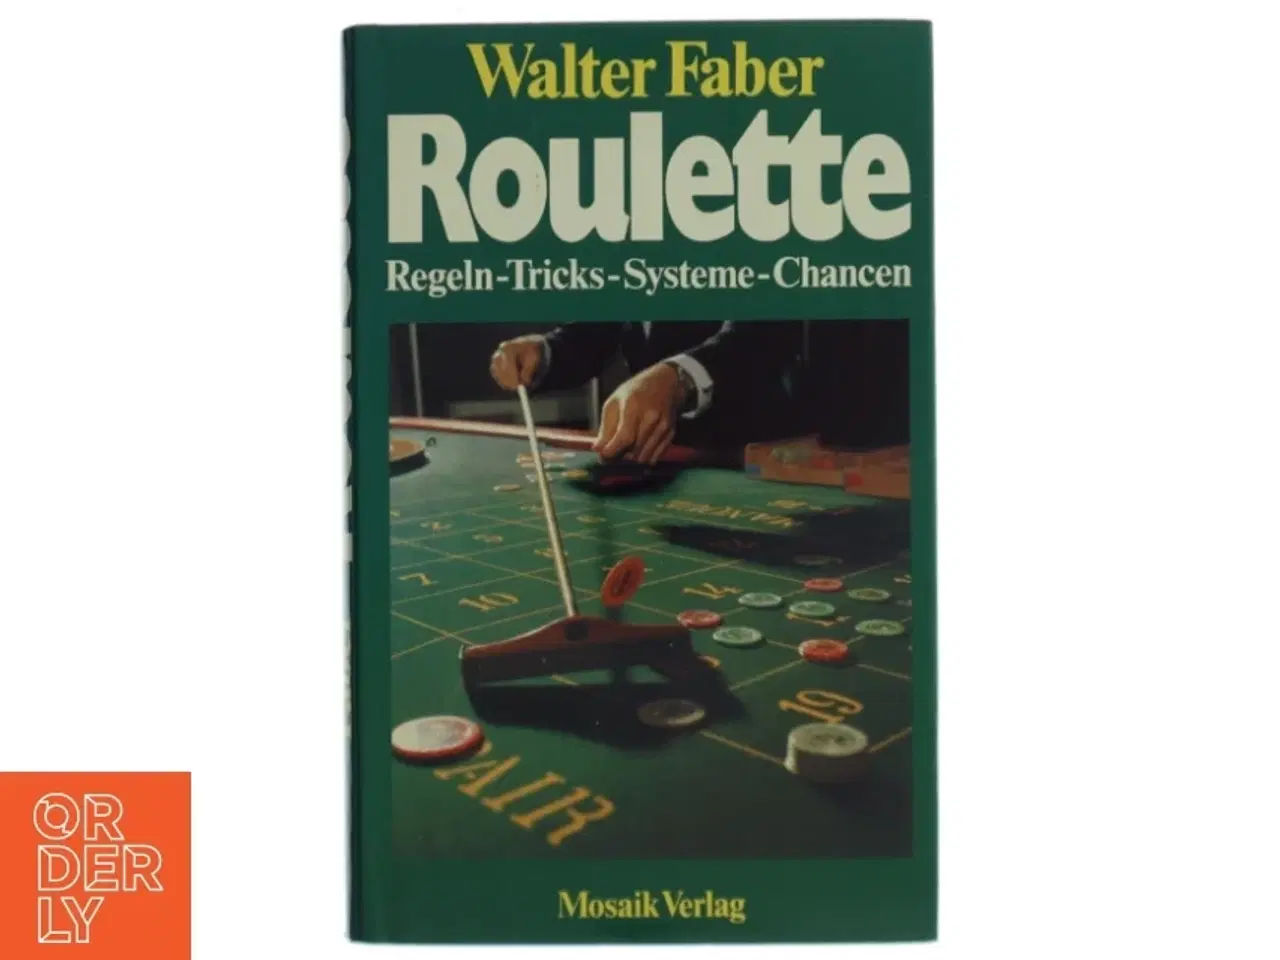 Billede 1 - Roulette bog af Walter Faber (Bog) fra Mosaik Verlag